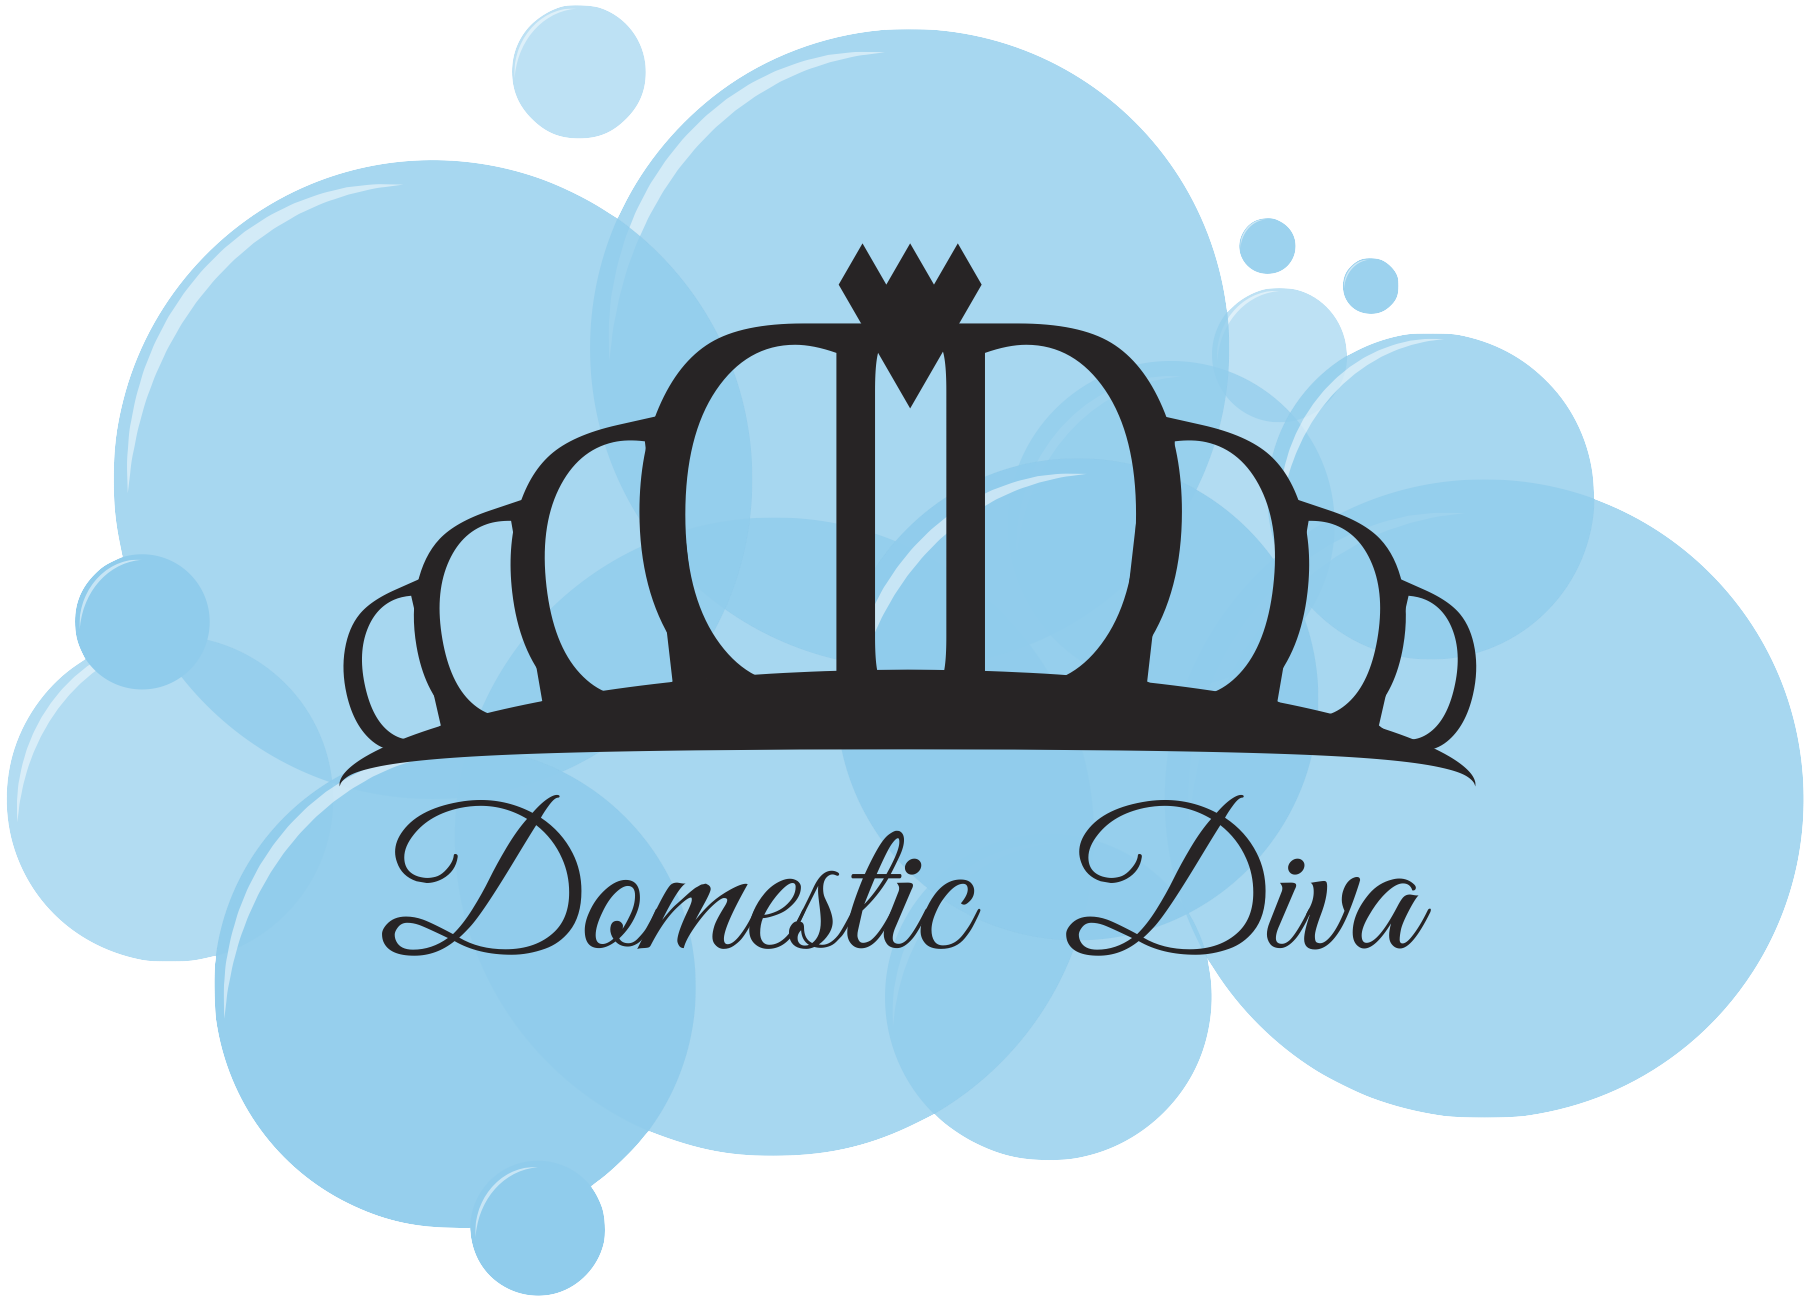 Domestic Diva